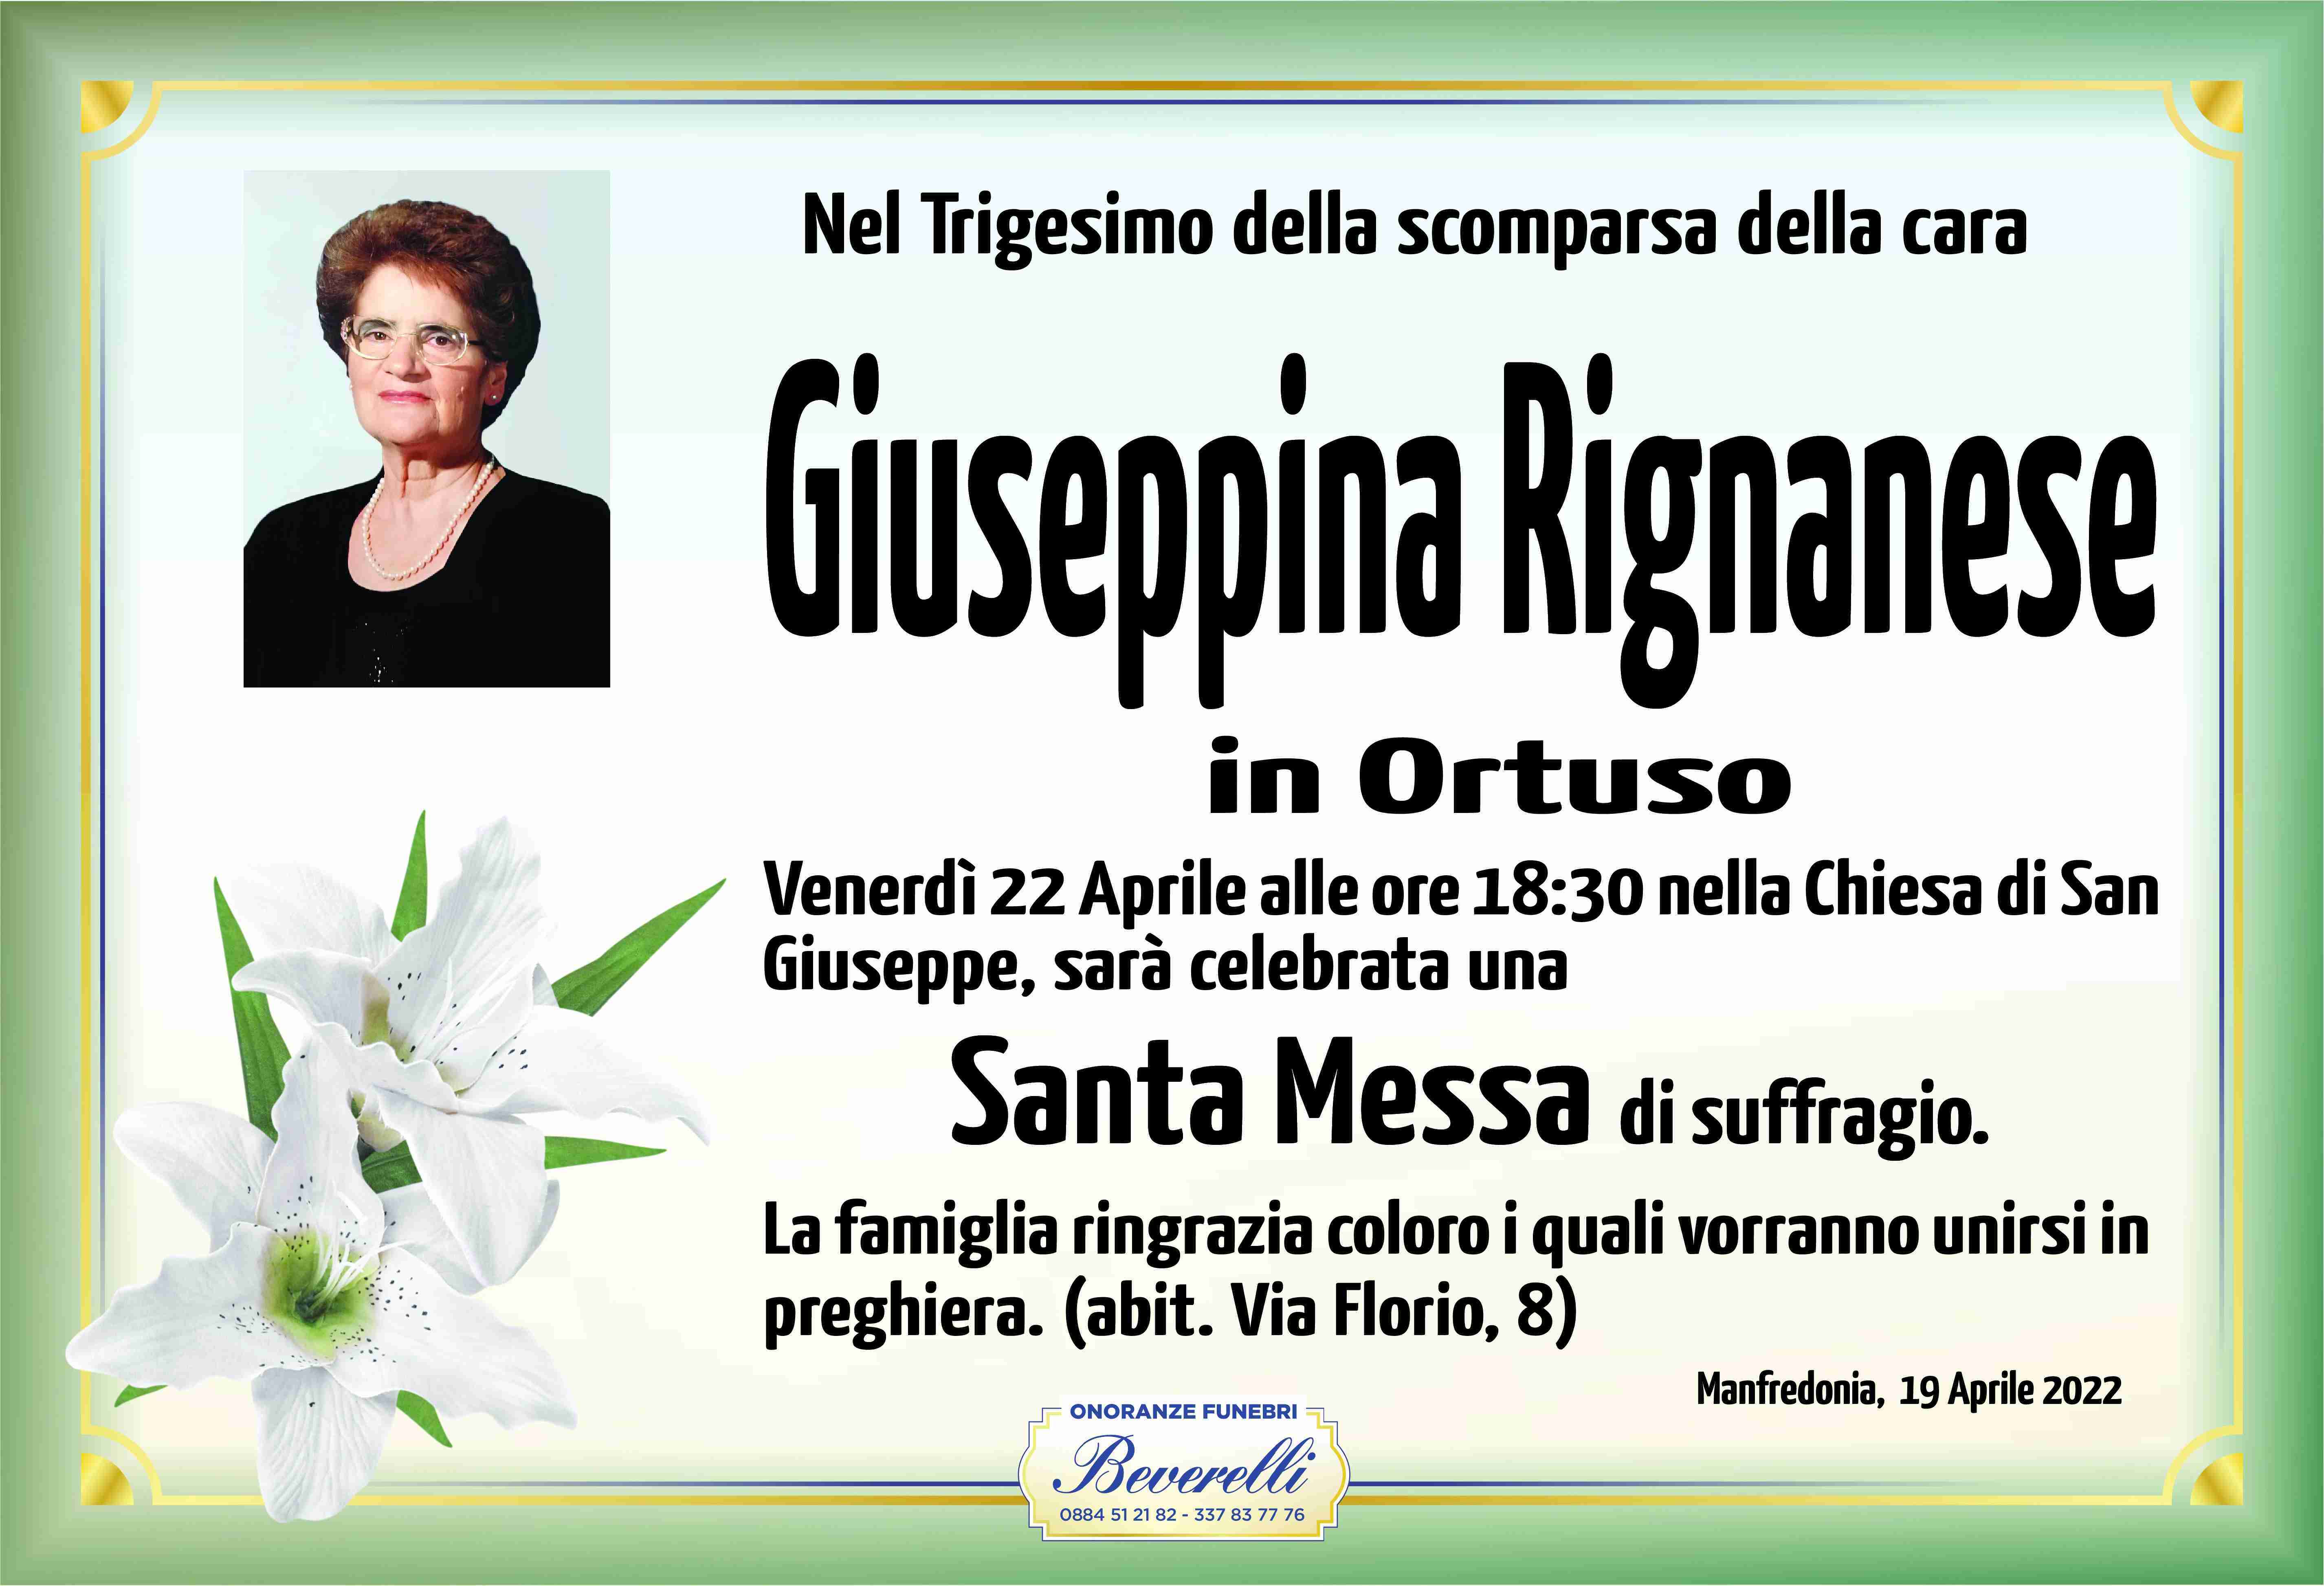 Antonia Maria Rignanese